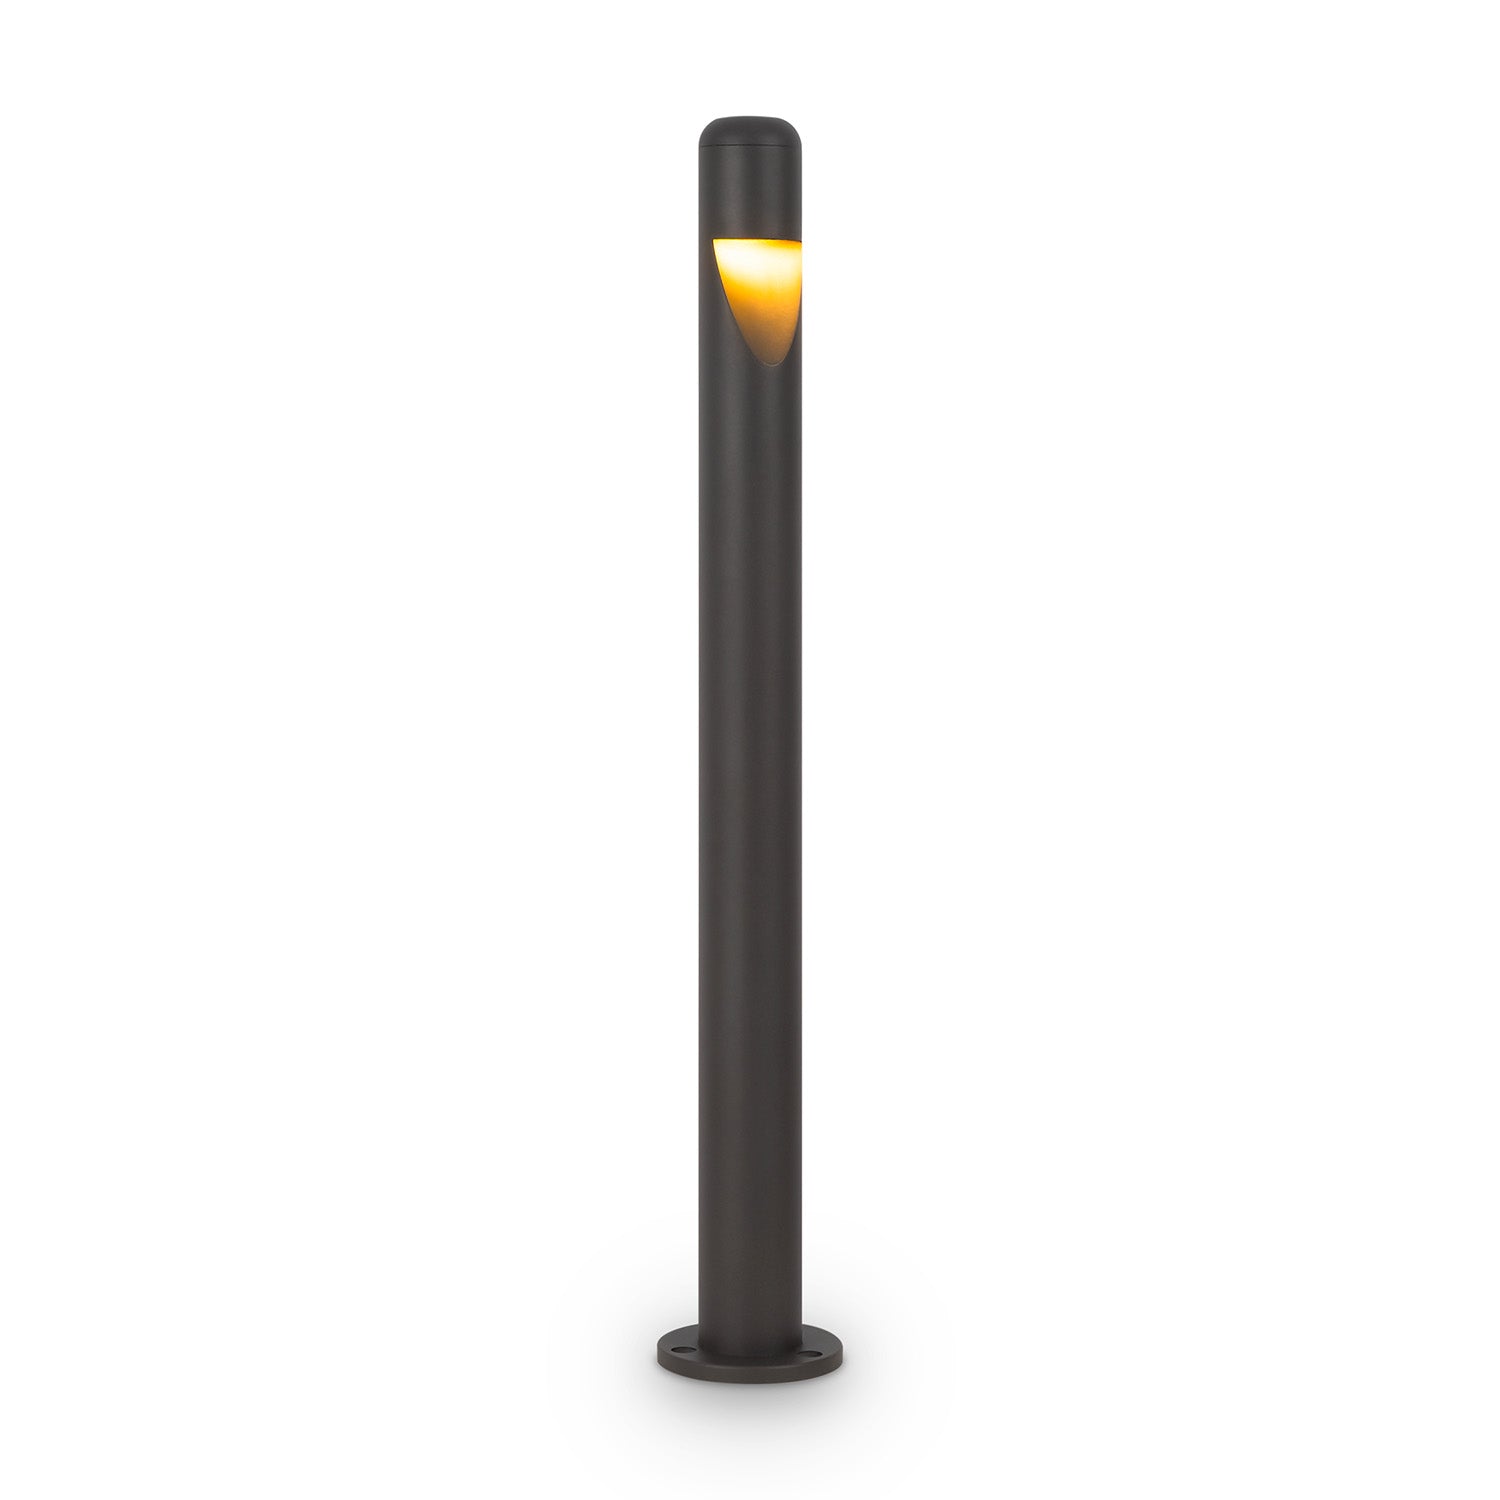 HAGEN - Lampe d'extérieur noire design, étanche et résistante